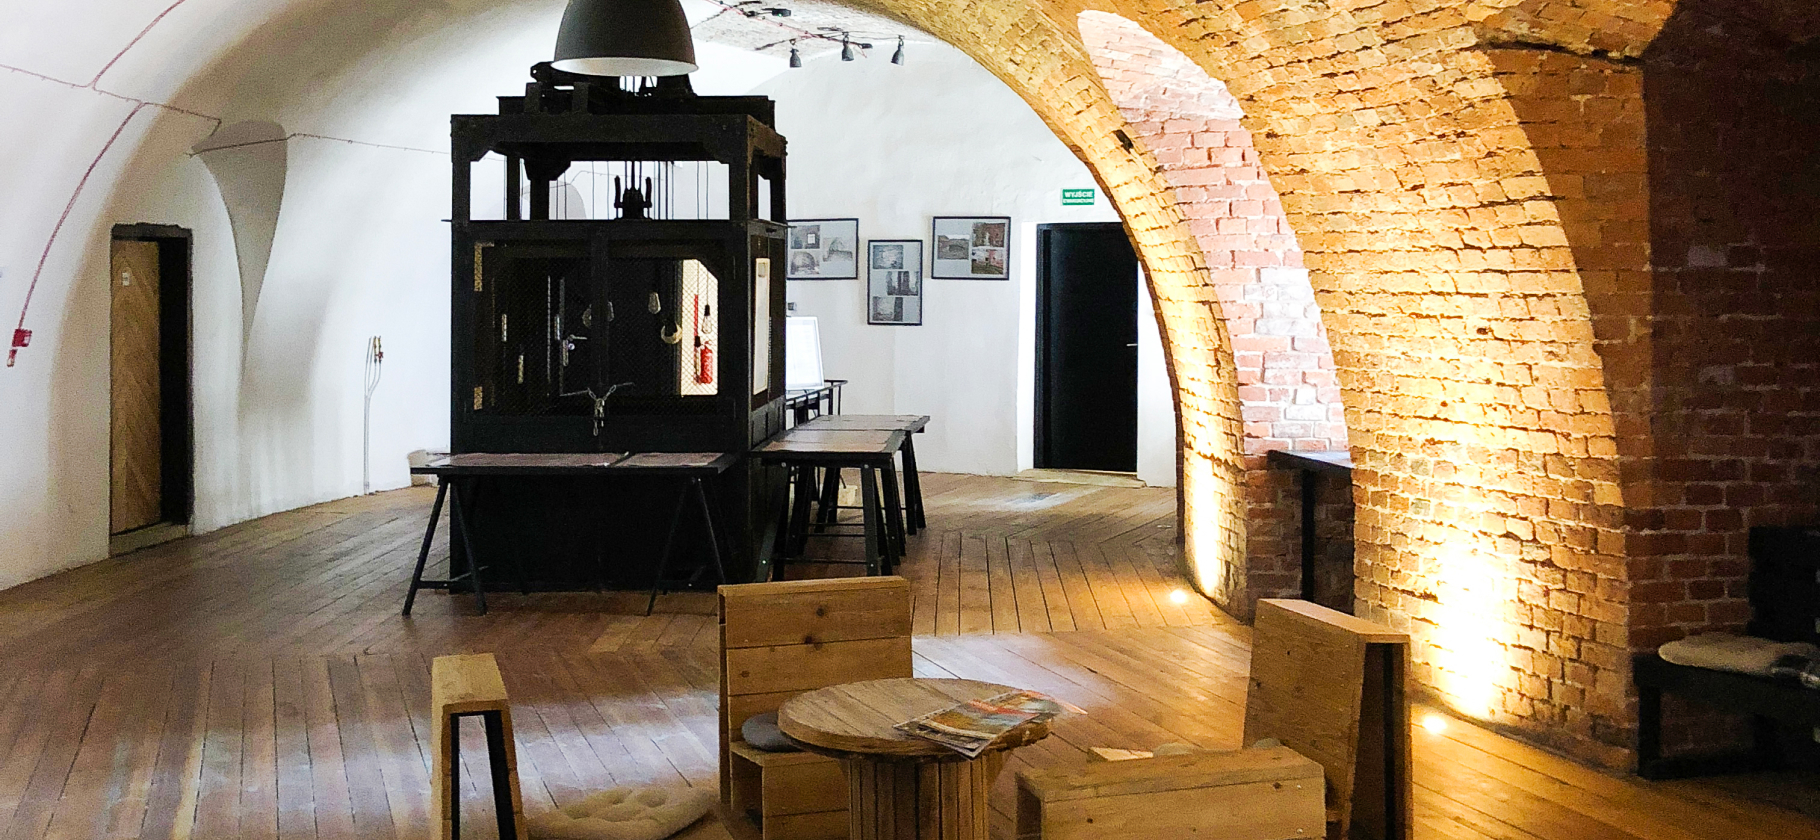 «Приглушенный свет и самодельная мебель»: как мы жили в бывшей тюрьме в Кракове